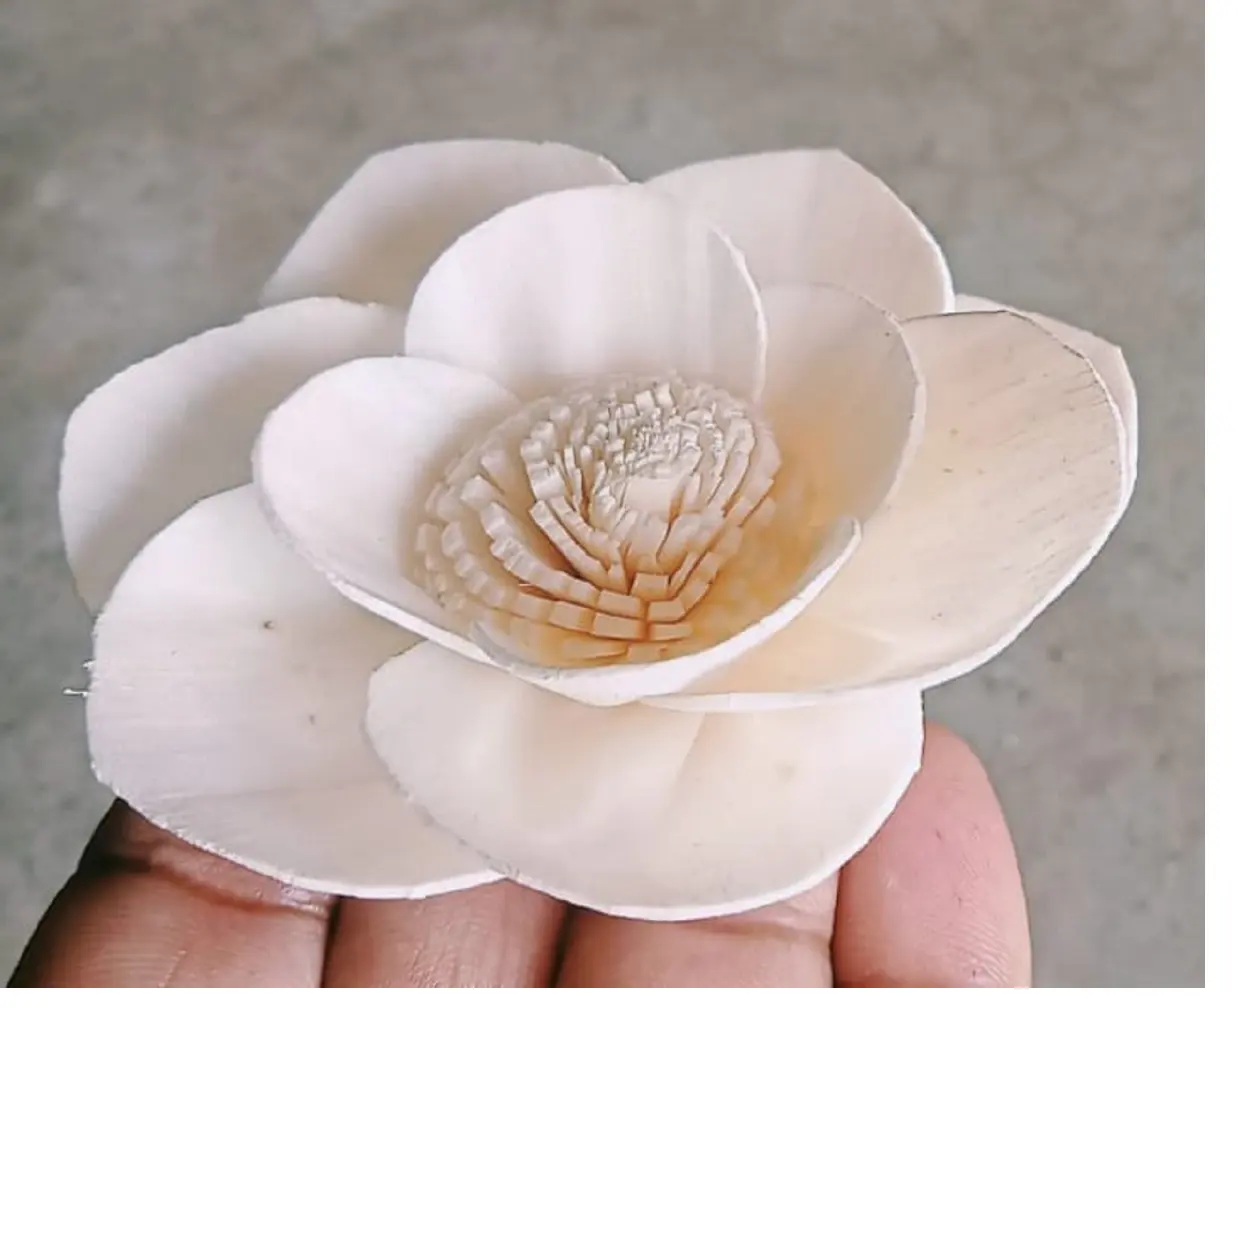 الطبيعي سولا الزهور مثالية للاستخدام بواسطة غرفة المعطر المصنعين و ل وعاء pourri ، المجففة تشكيلة زهور مصمم